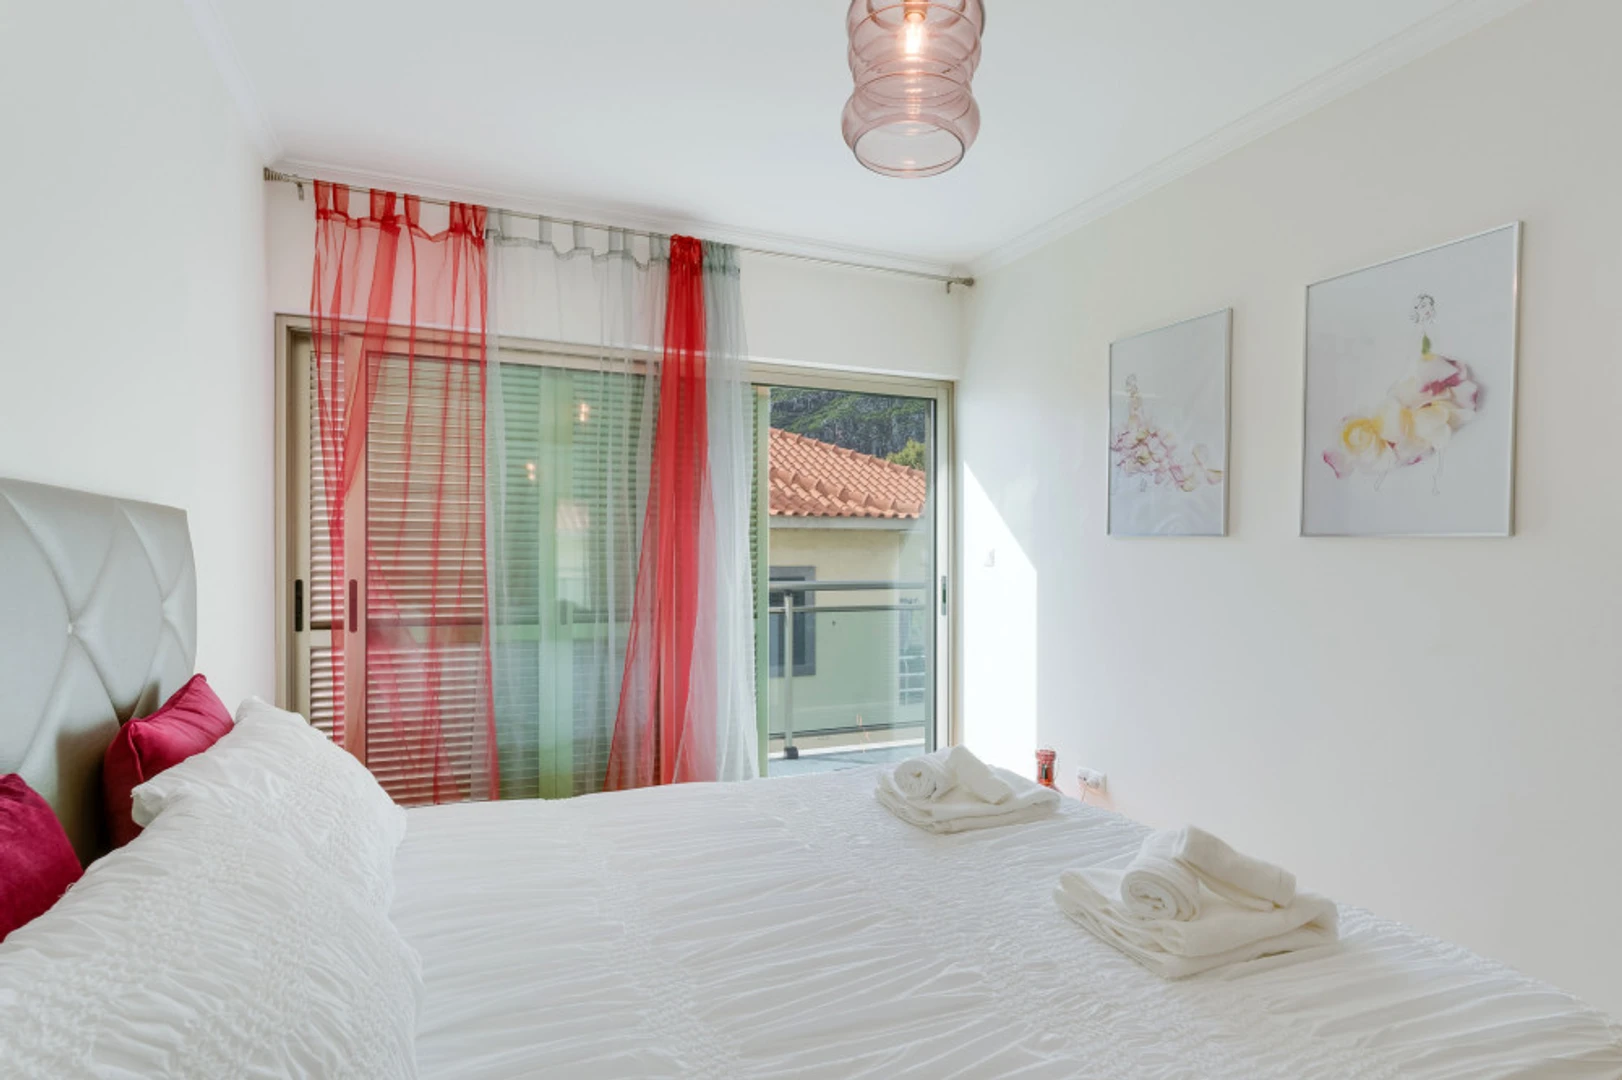 Appartement moderne et lumineux à Madeira